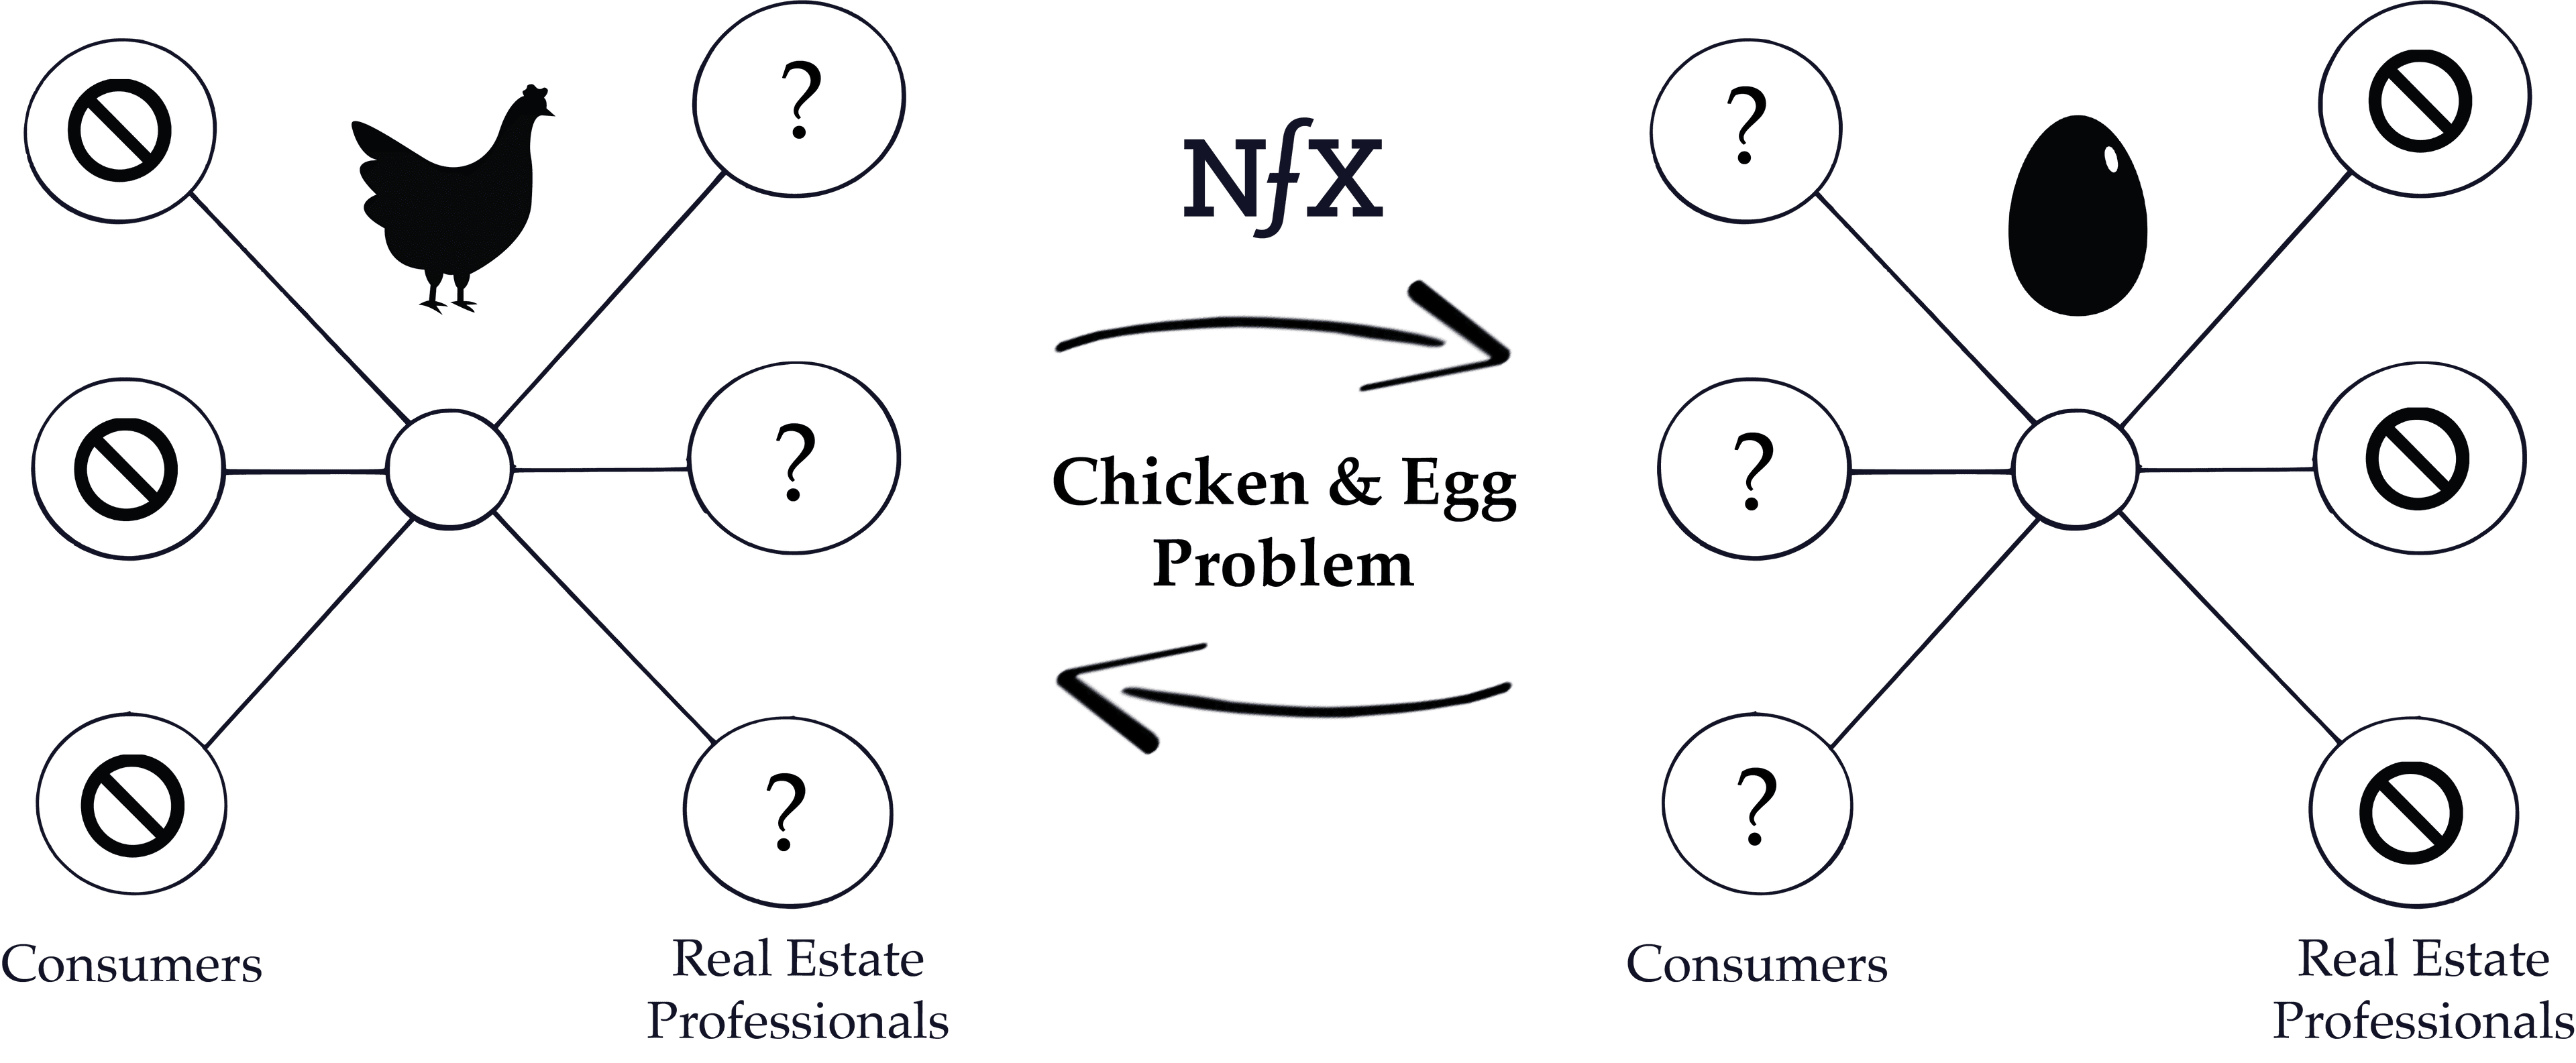 Chicken & Egg Problem